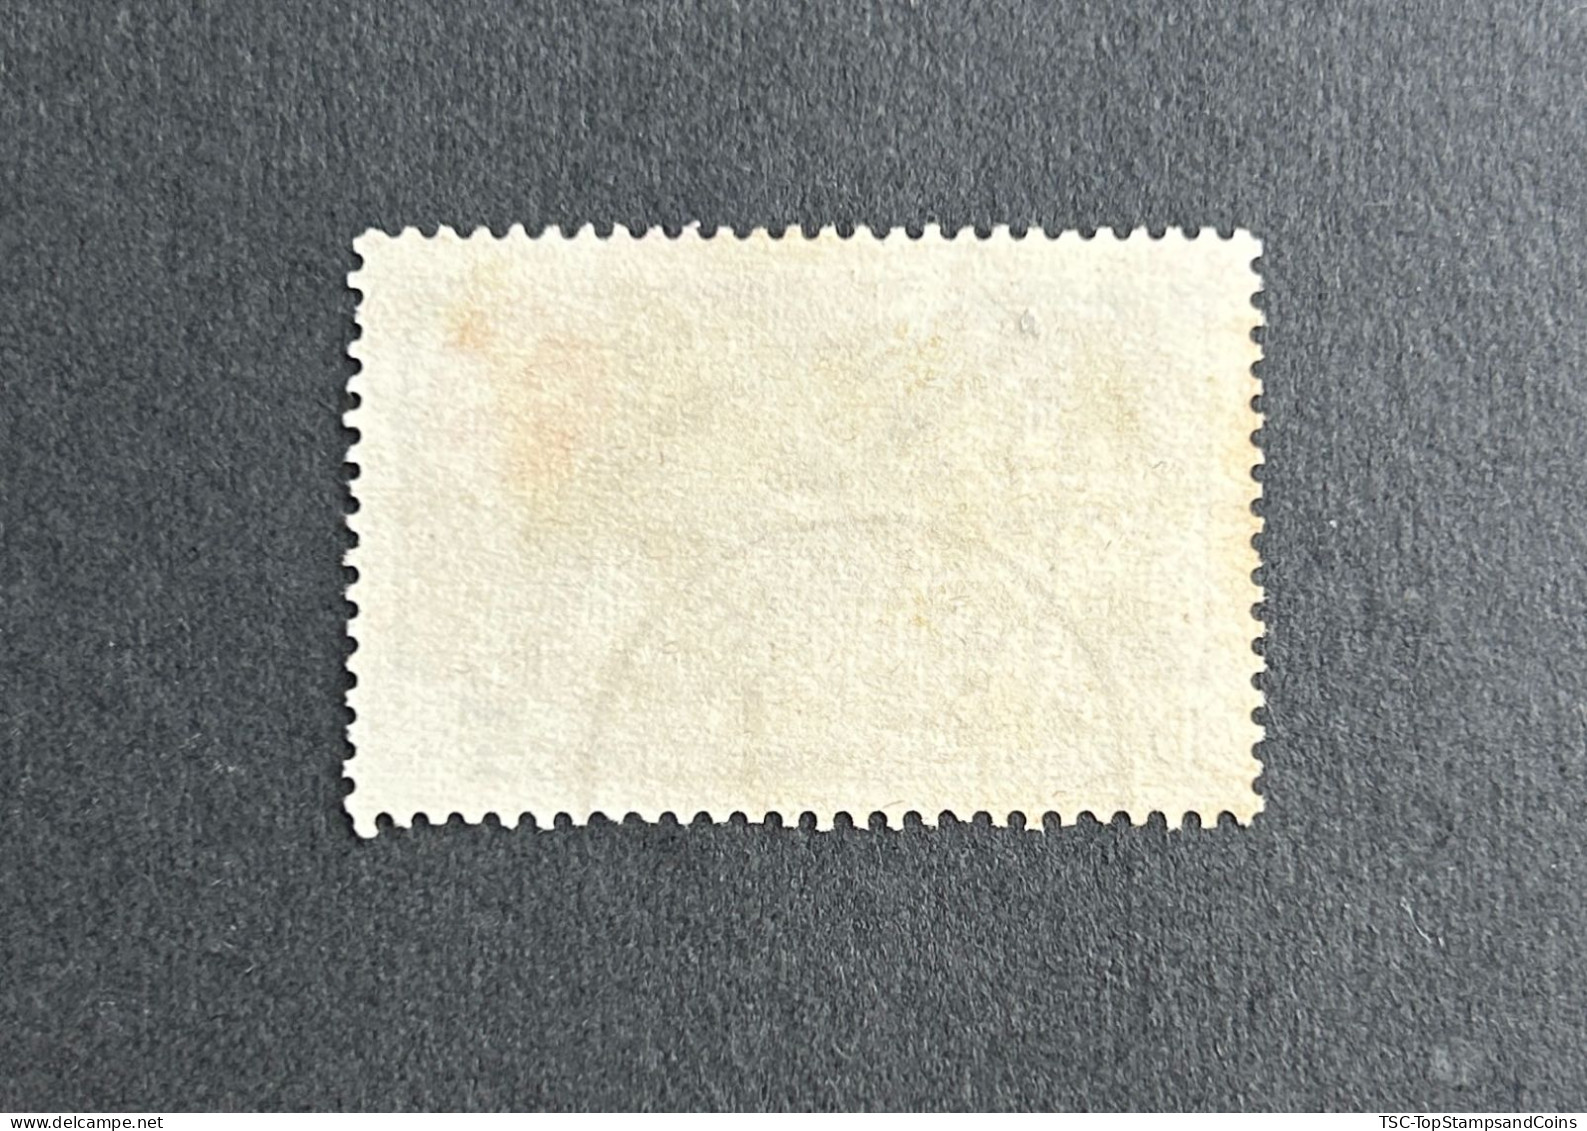 FRAEQ0237U1 - Order Of Malta - Leprosy Relief - 15 F Used Stamp - AEF - 1957 - Usados